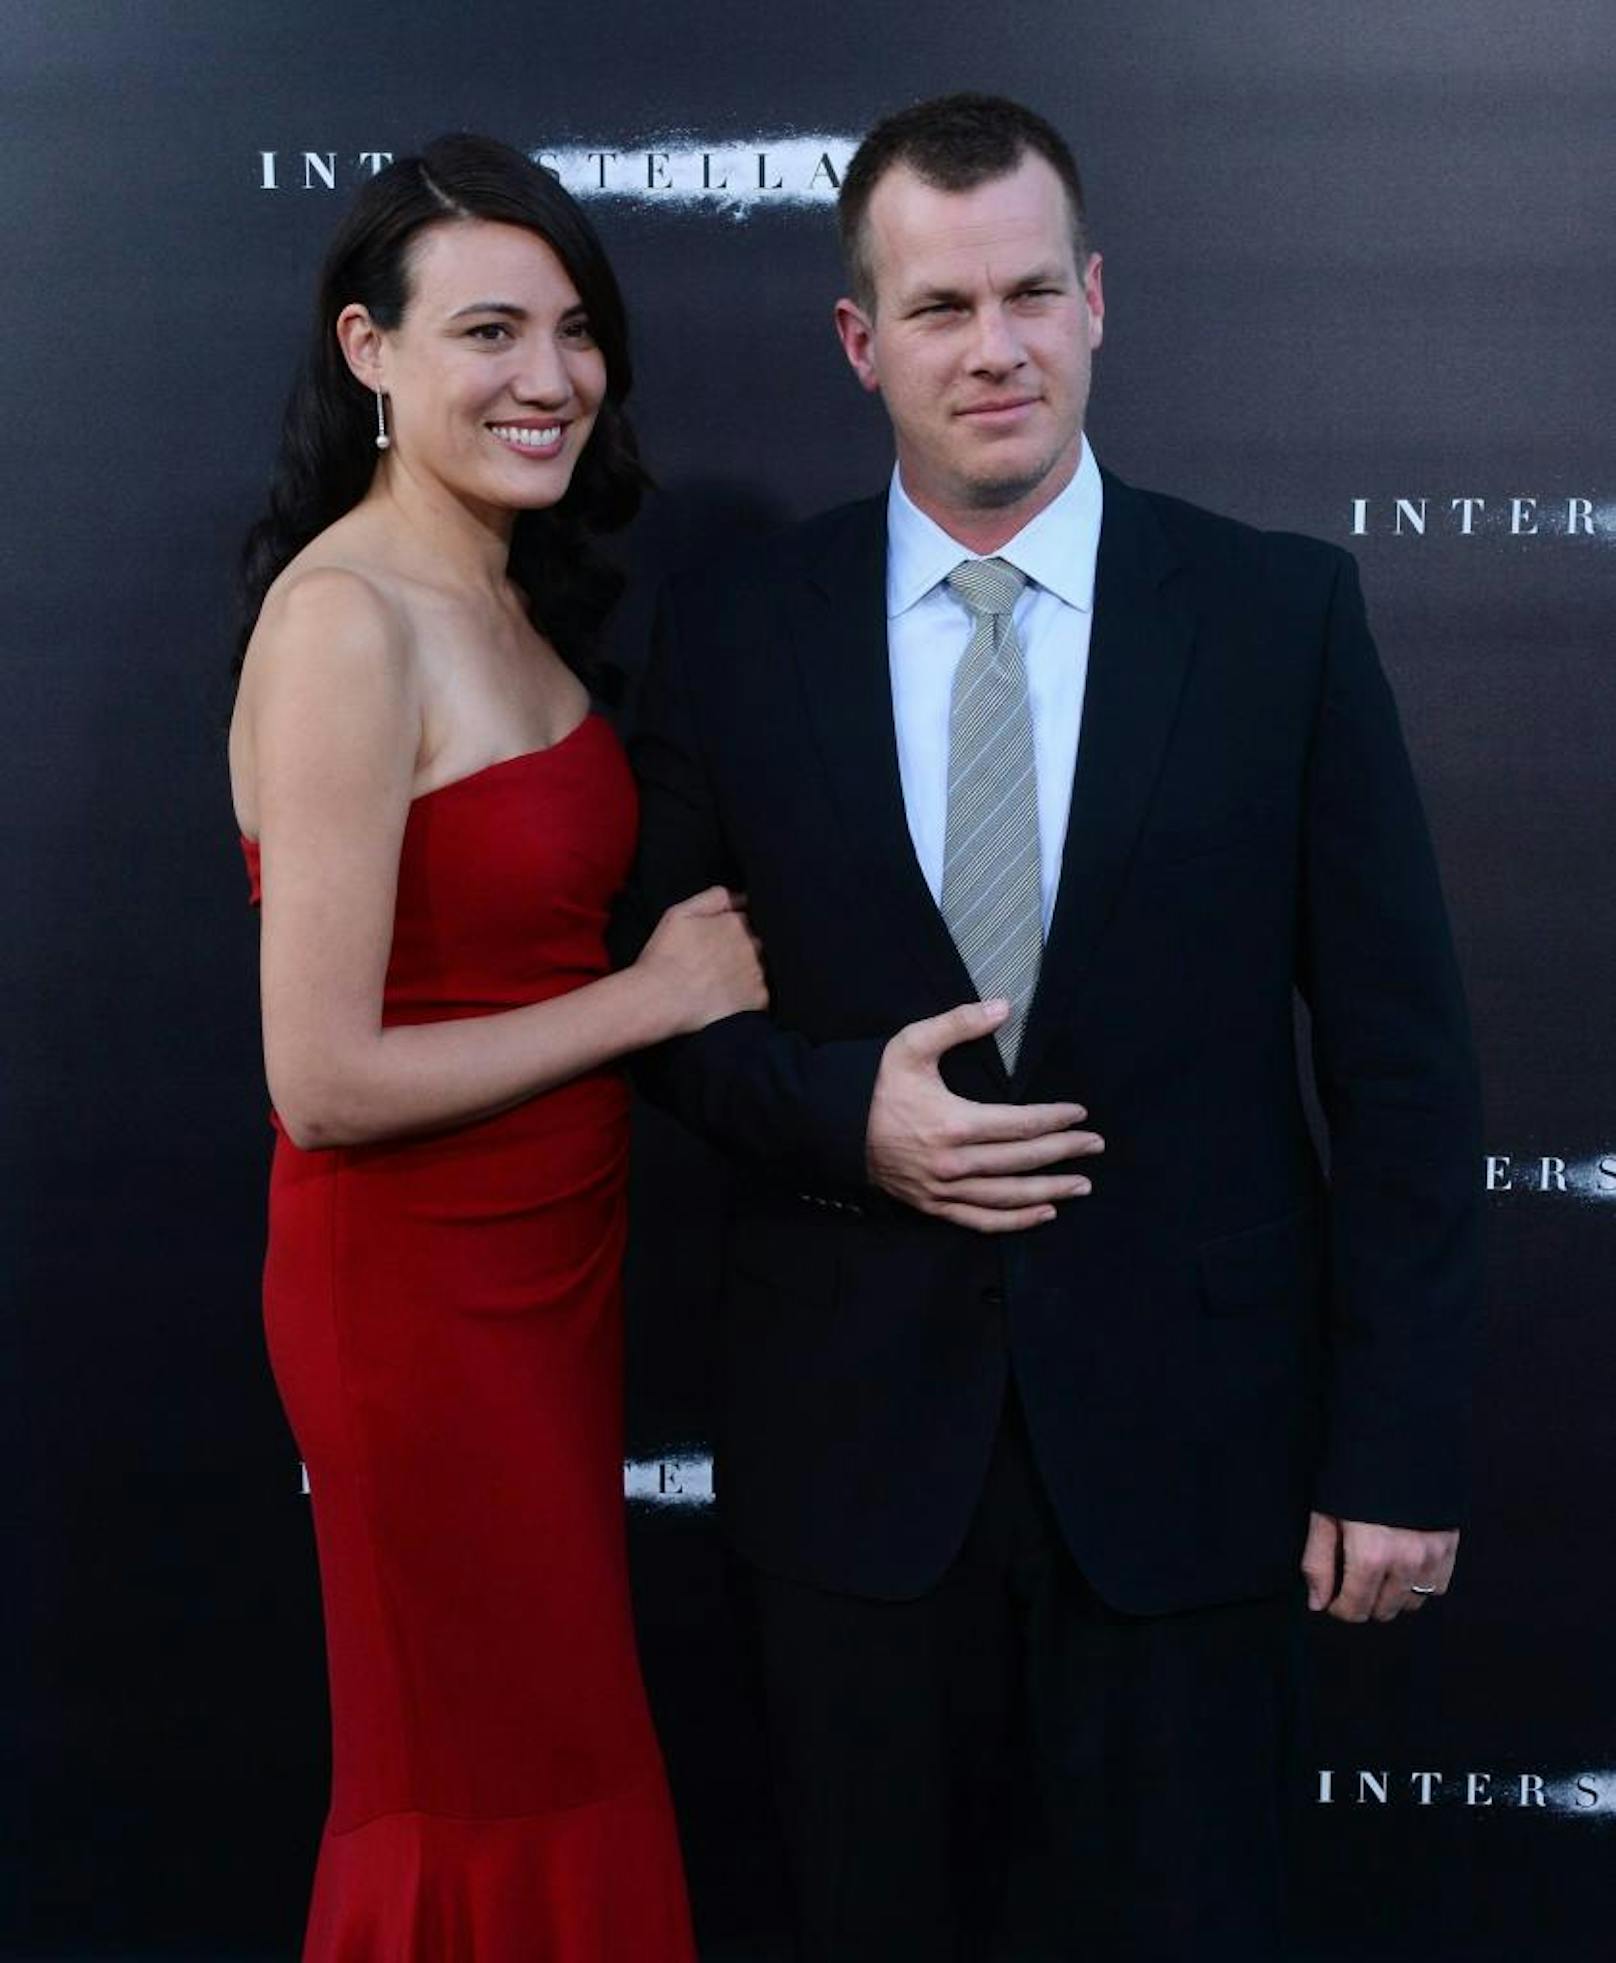 Lisa Joy und Jonathan Nolan bei der Premiere von "Interstellar" am 26. Oktober 2014 in Hollywood. 